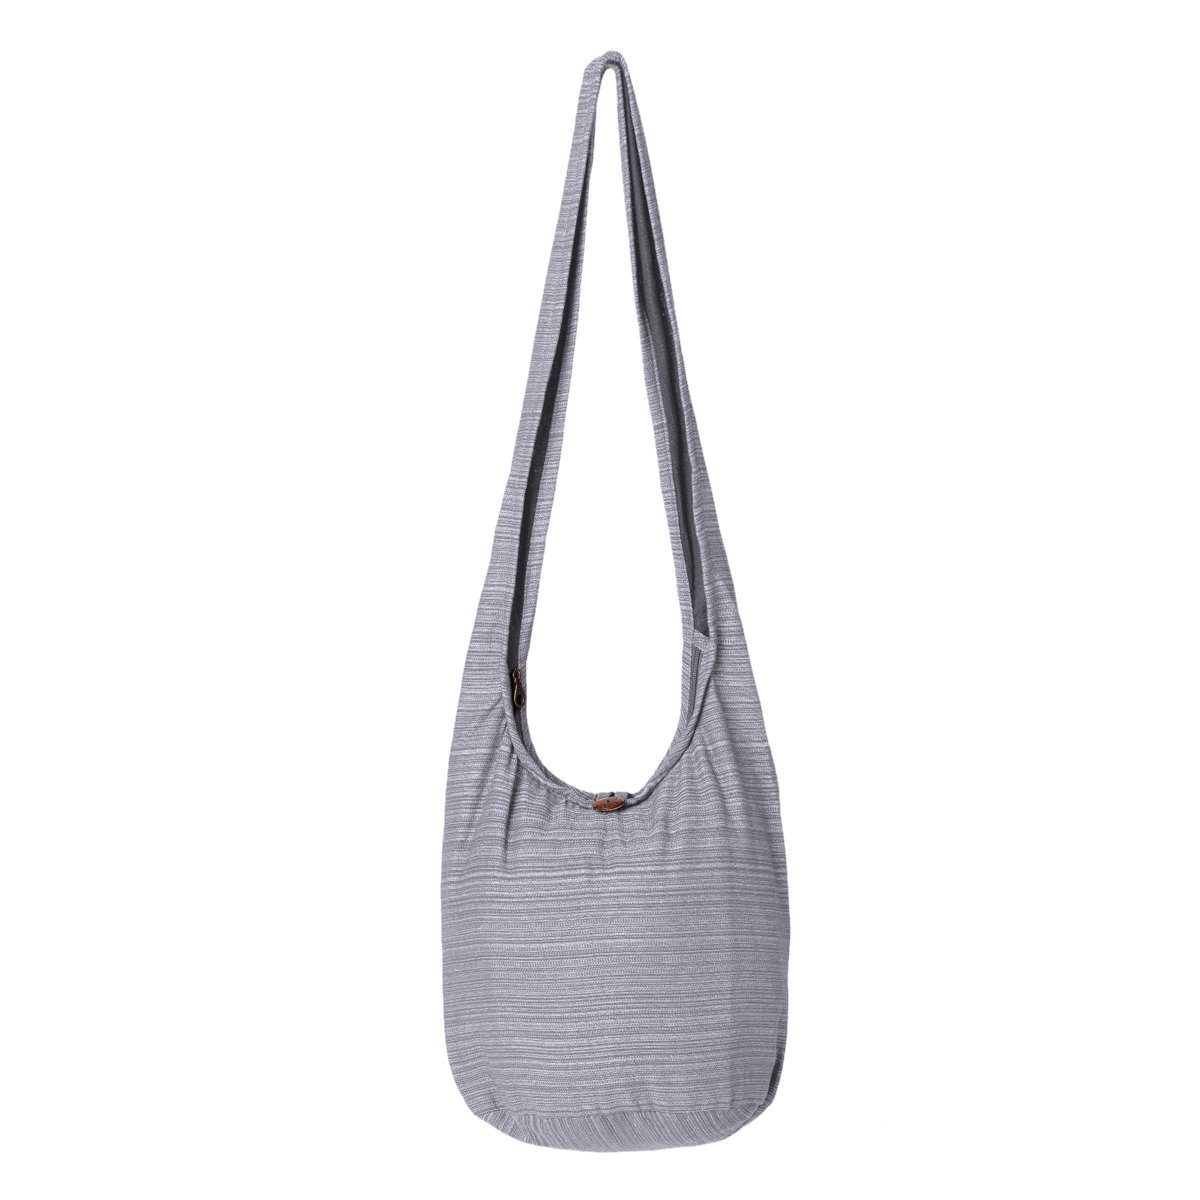 PANASIAM Wickeltasche Schulterbeutel Lini Beuteltasche aus 100% Baumwolle Schultertasche, In 2 Größen auch als Strandtasche Yogatasche oder Handtasche nutzbar grau